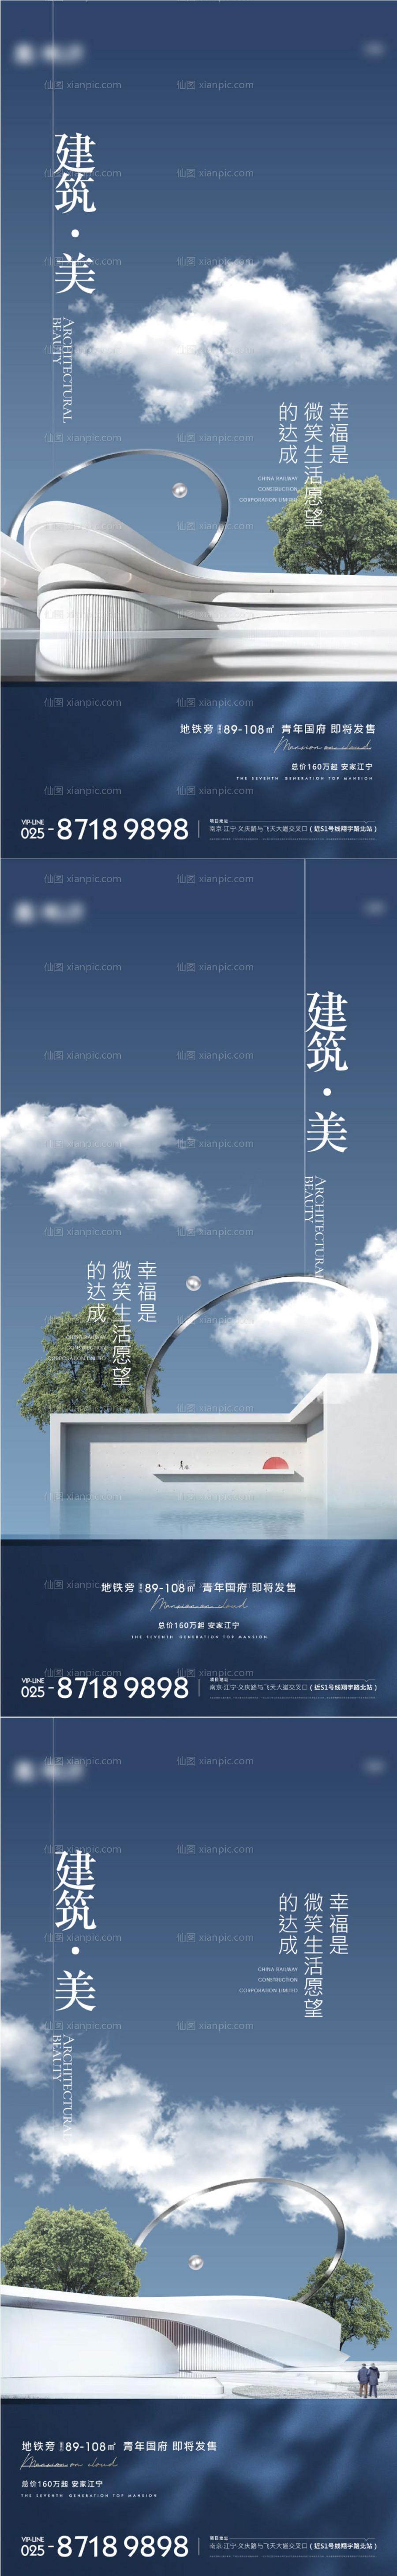 素材乐-地产建筑系列海报